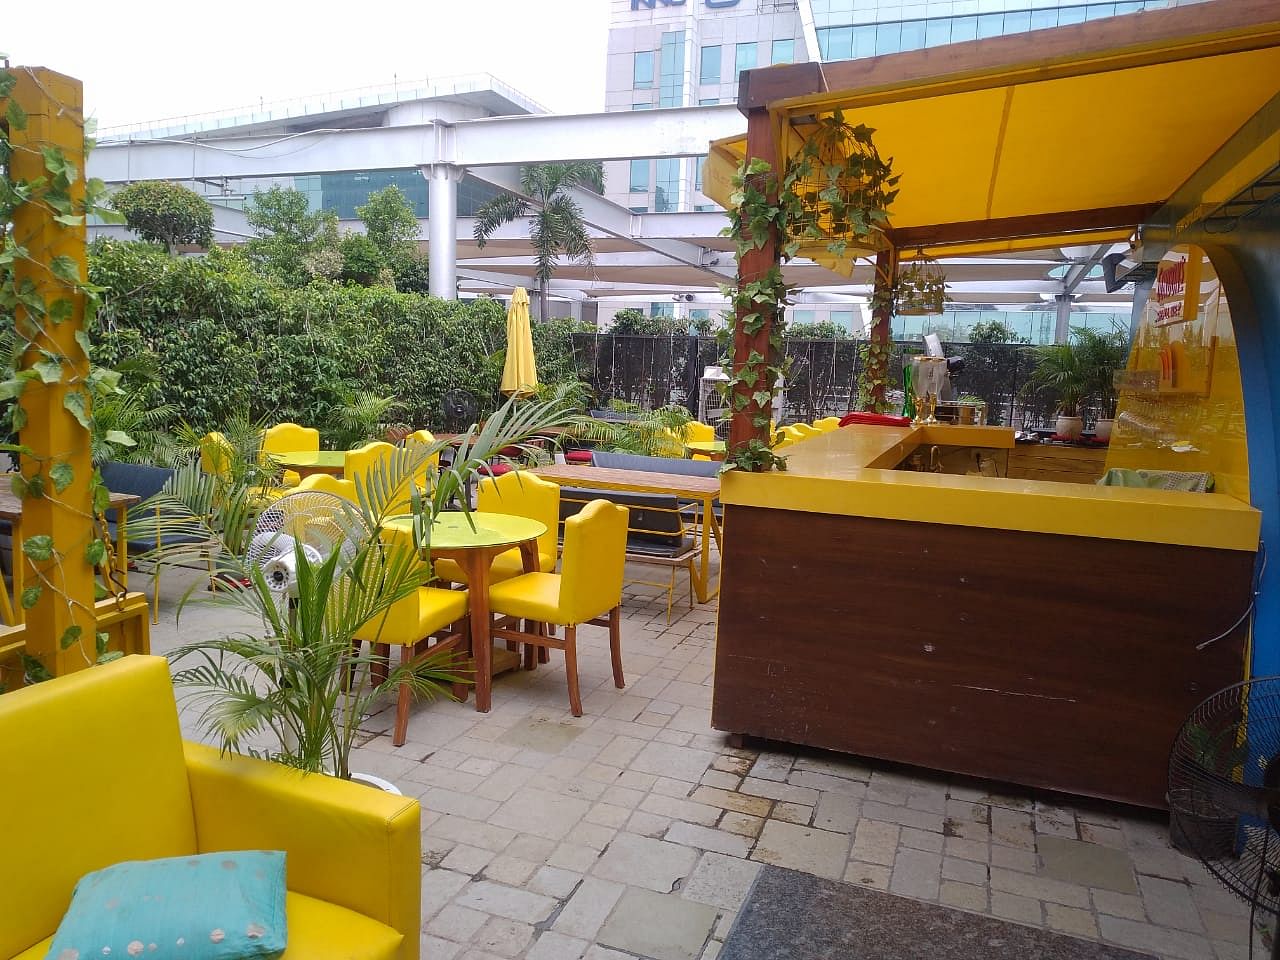 Raasta Cafe in DLF Cyber Hub, Gurgaon